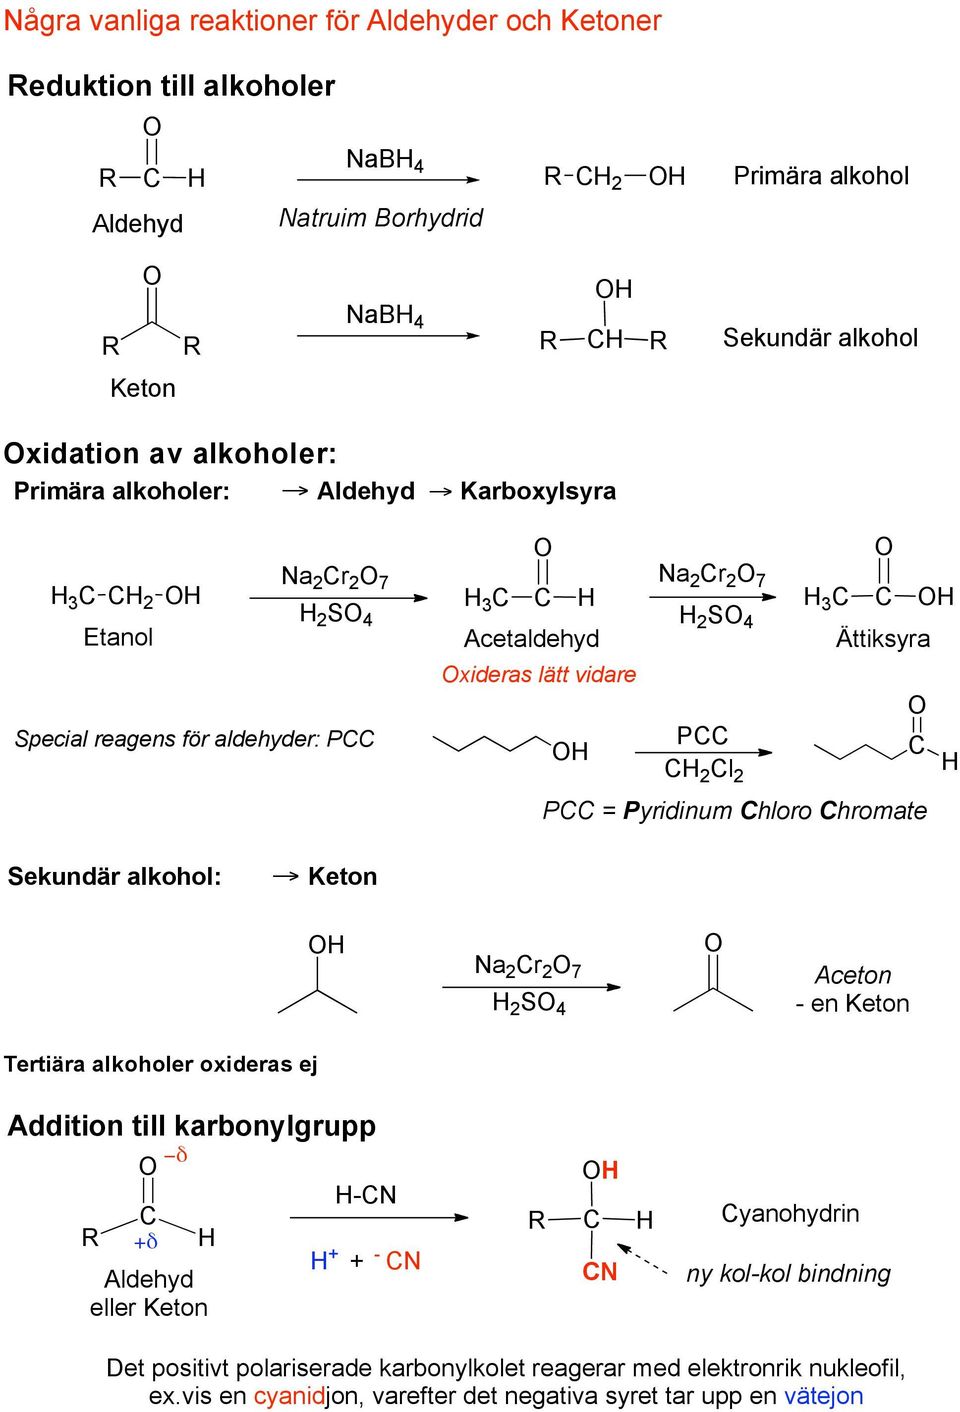 Karboxylsyra a 2 r 2 7 3 2 2 S 4 Etanol Special reagens för aldehyder: P 3 Acetaldehyd xideras lätt vidare a 2 r 2 7 2 S 4 P 2 l 2 3 Ättiksyra P = Pyridinum hloro hromate